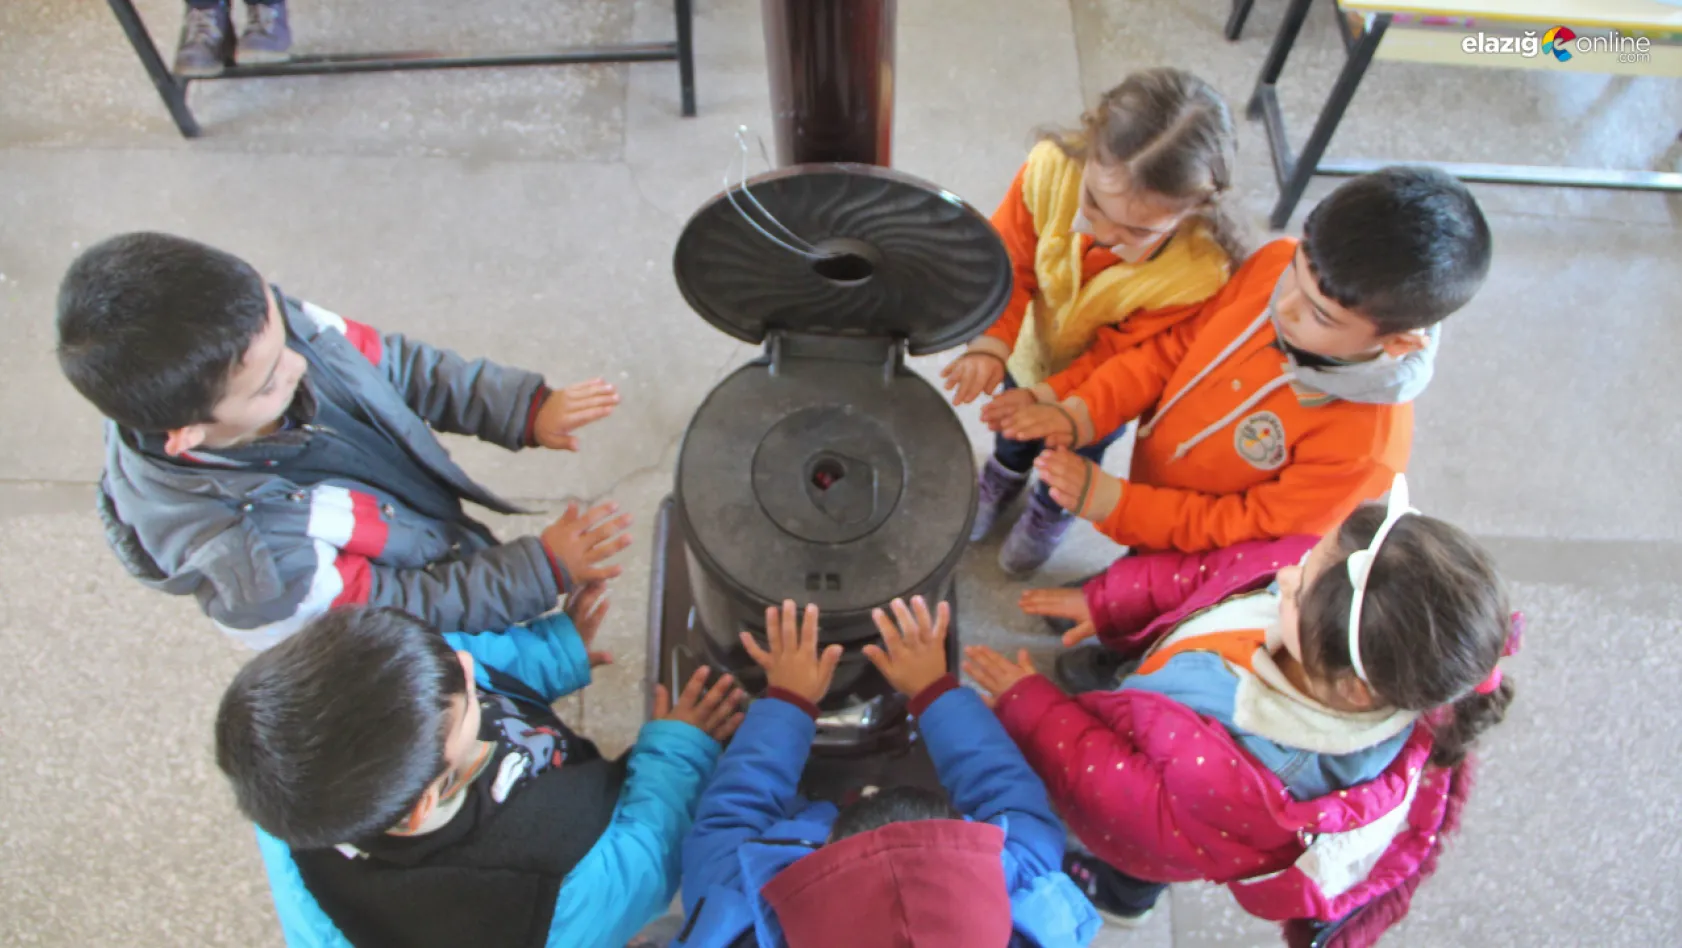 Elazığ'da atıl durumundaki okullar köy yaşam merkezine dönüştürüldü